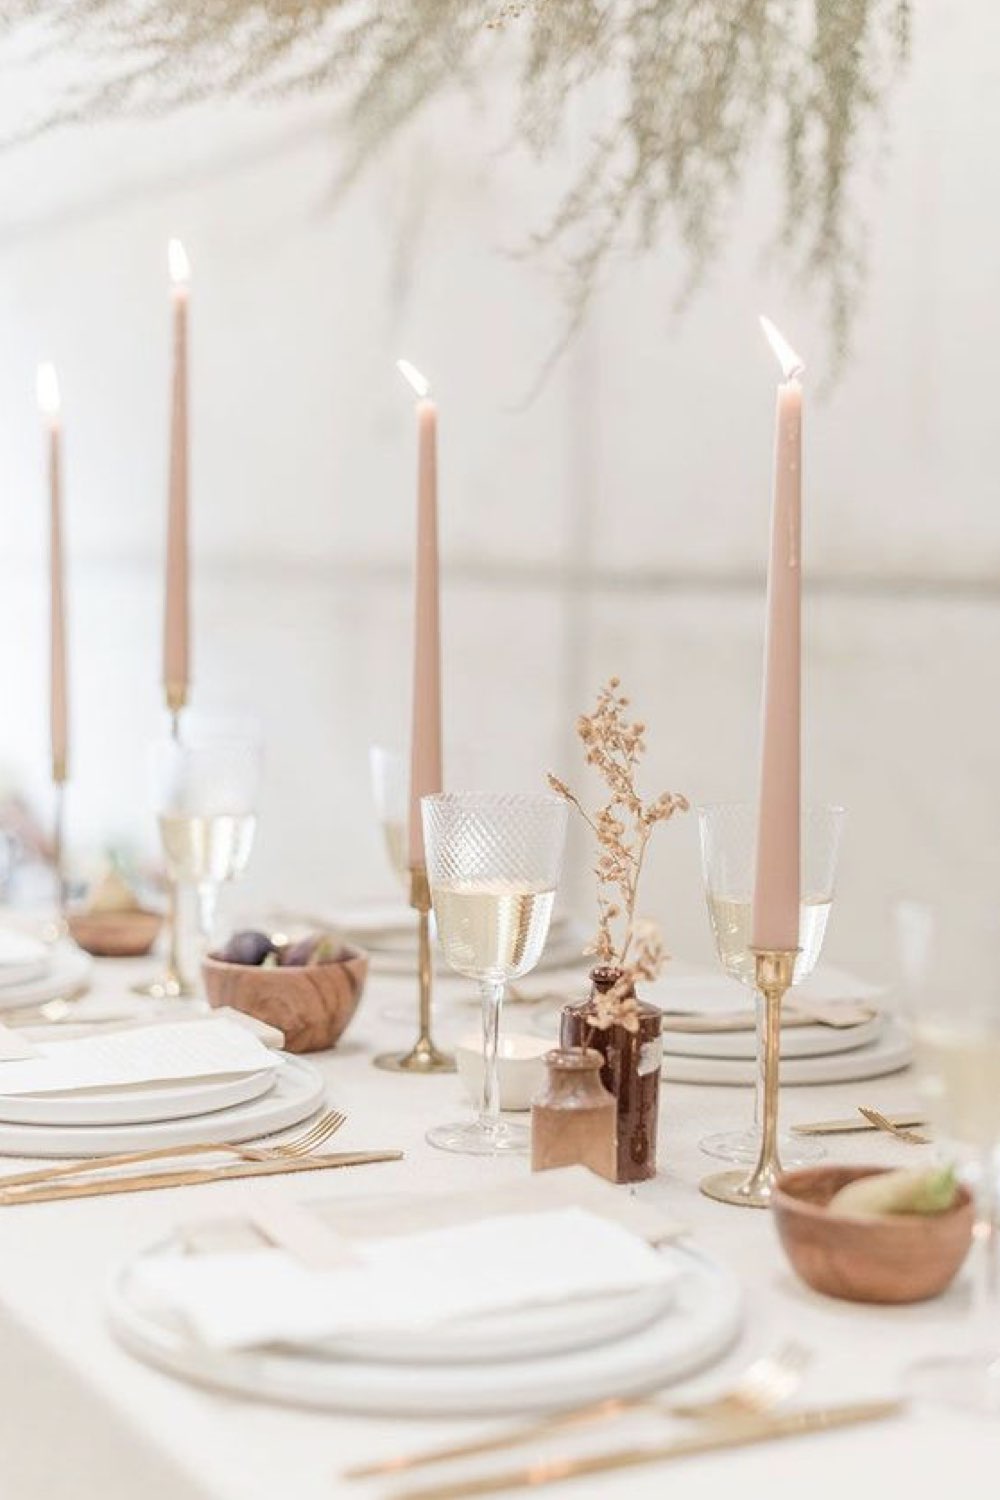 decoration mariage simple minimal chic table décorée élégamment bougie rose pastel assiette blanche  petit vase pour fleur verre à vin en verre relief